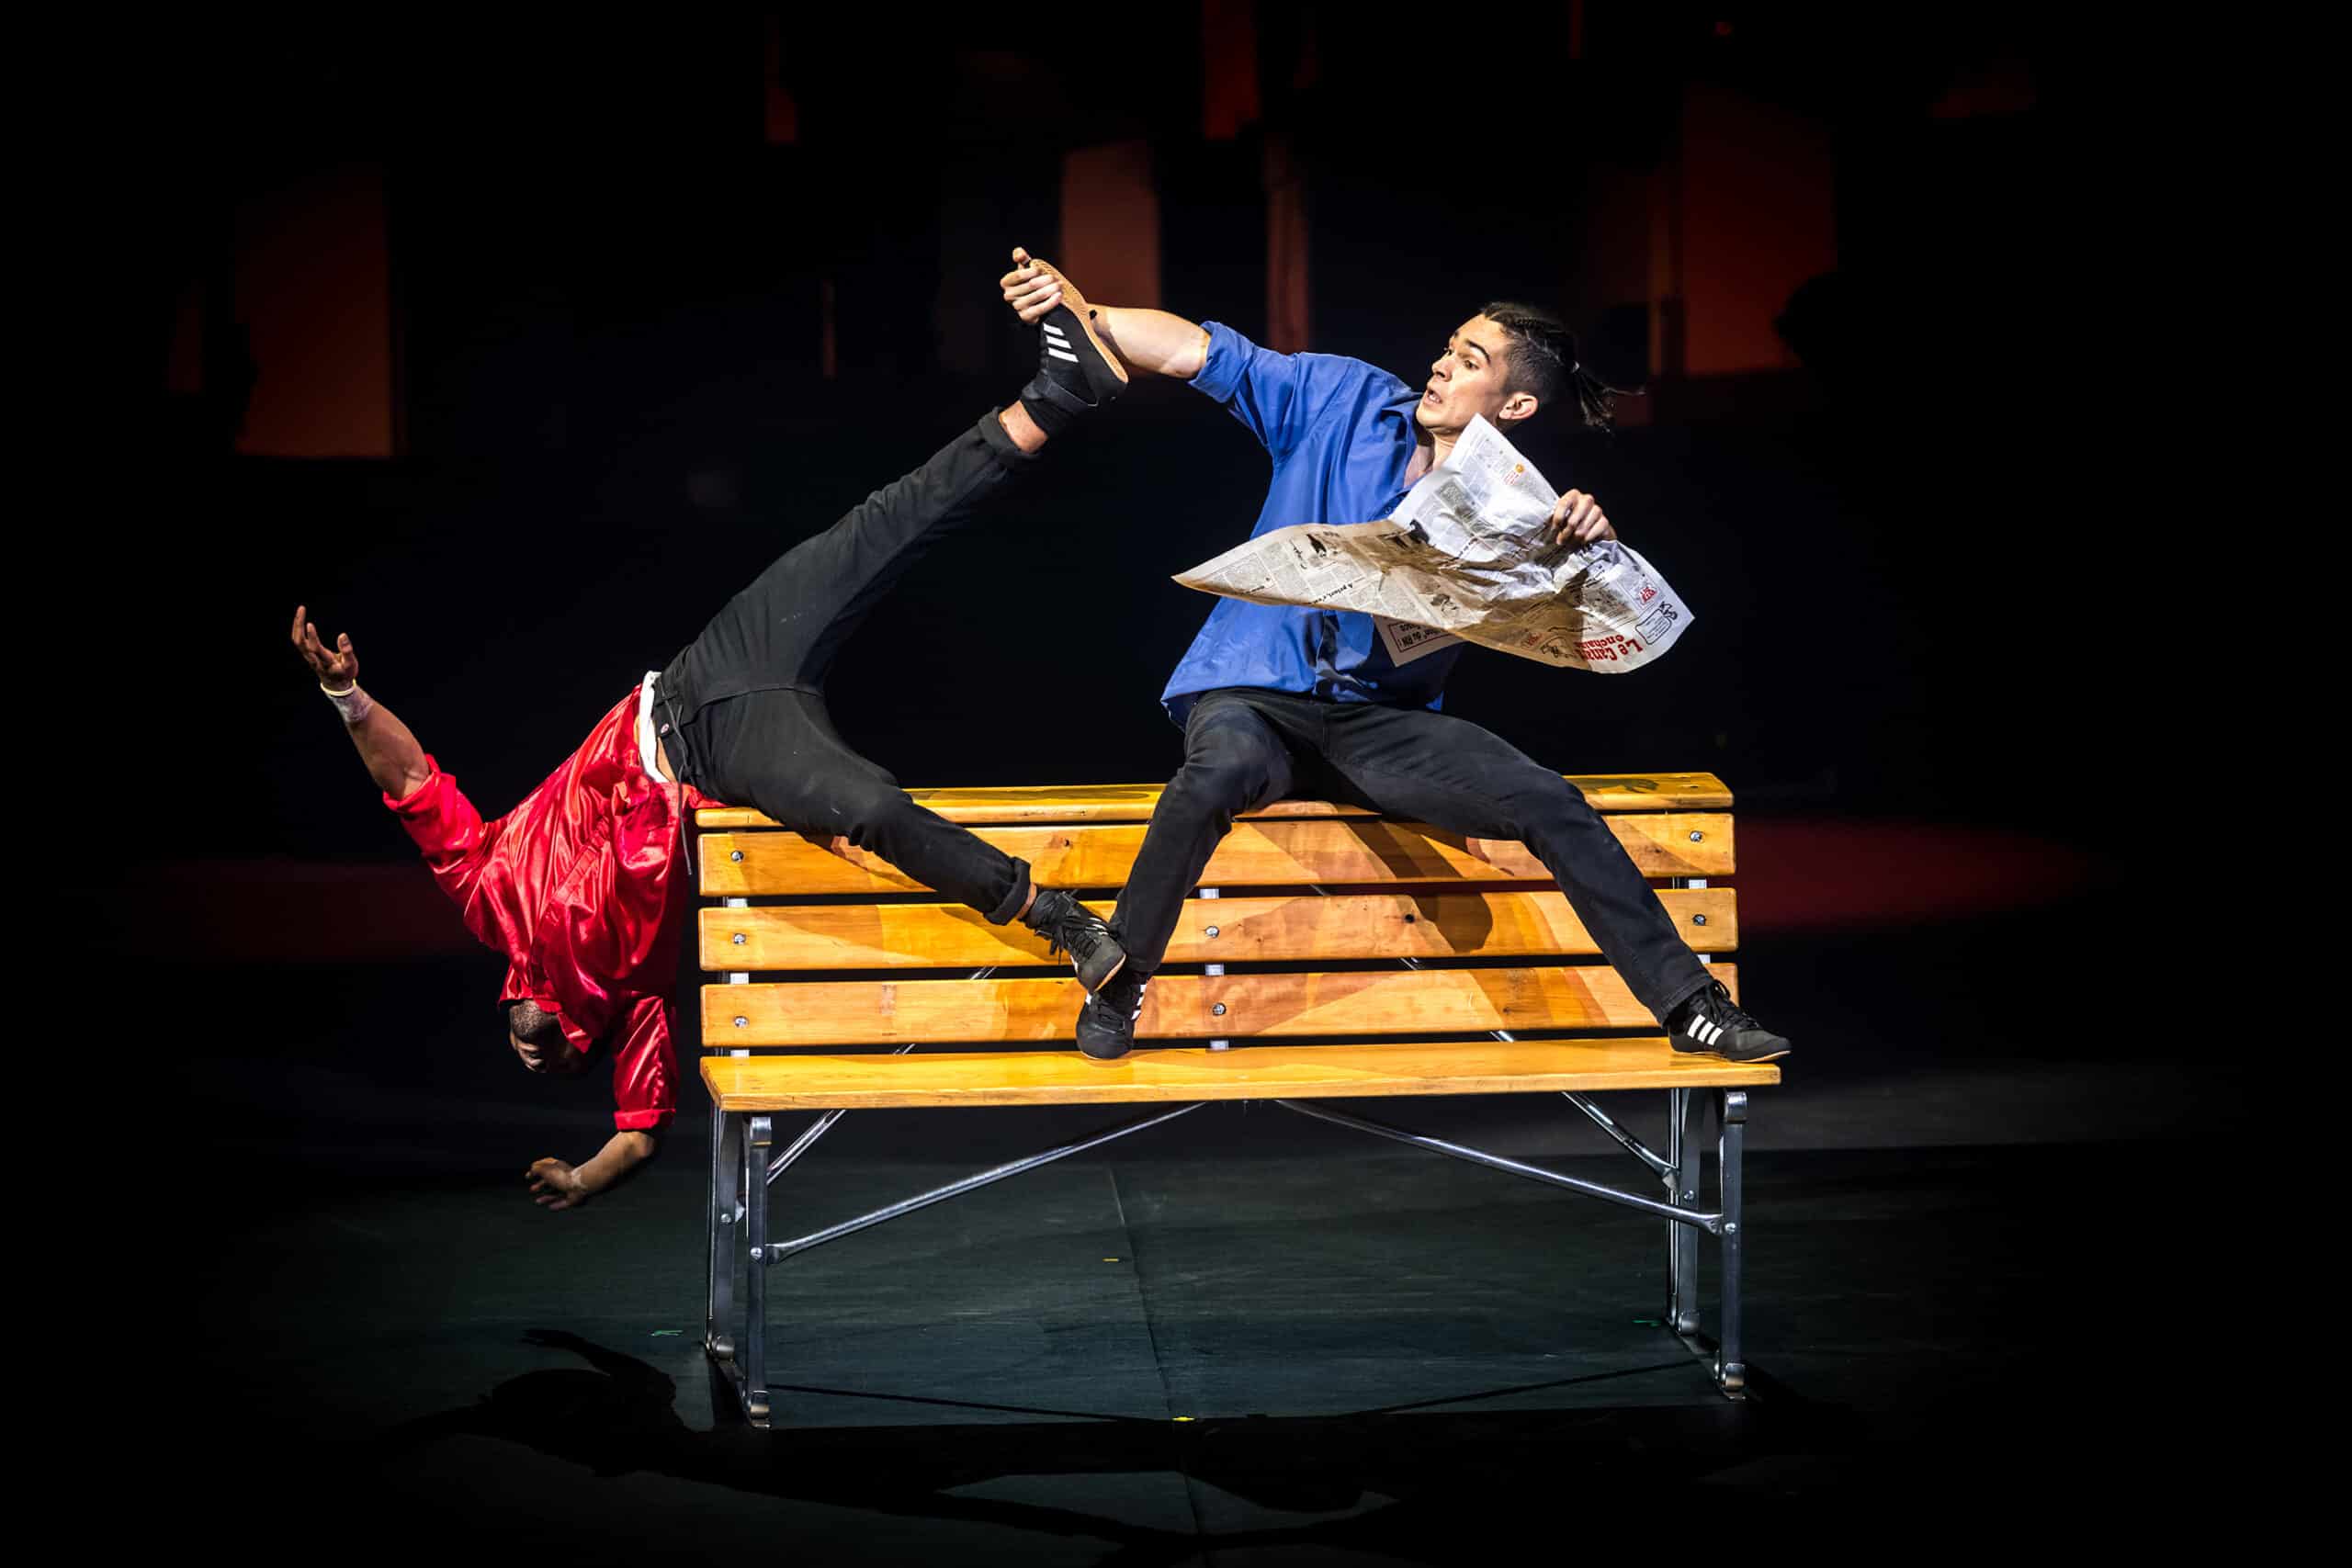 Numéro d'acrobaties burlesques sur un banc du spectacle Rhapsodie au Cirque Phénix